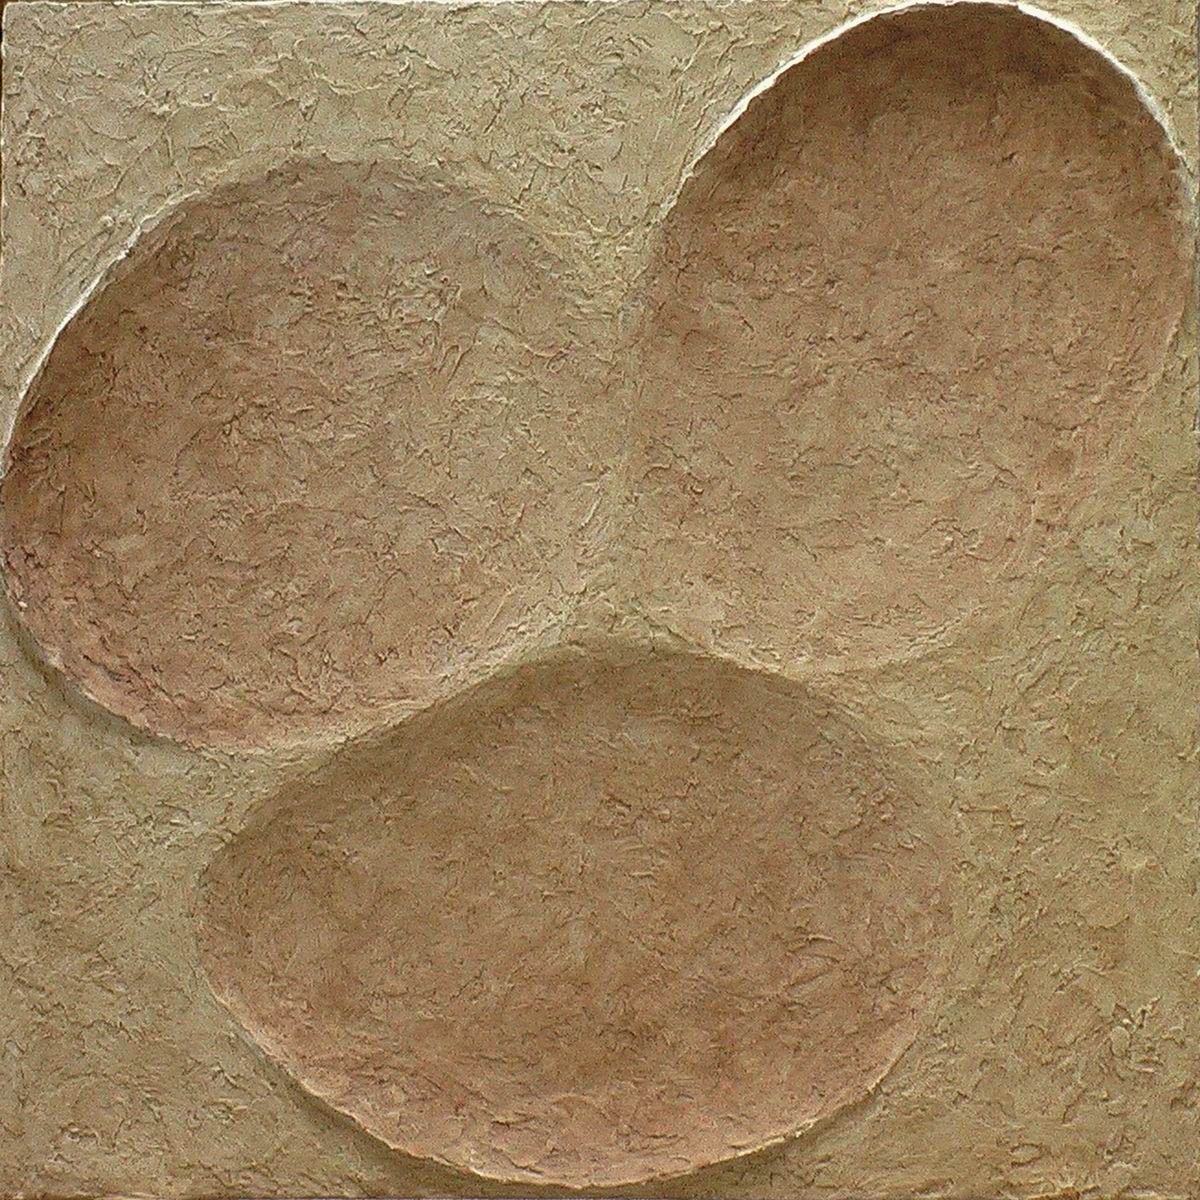 2007,Otisk plodu země 2 ,sádra, 50x50 cm